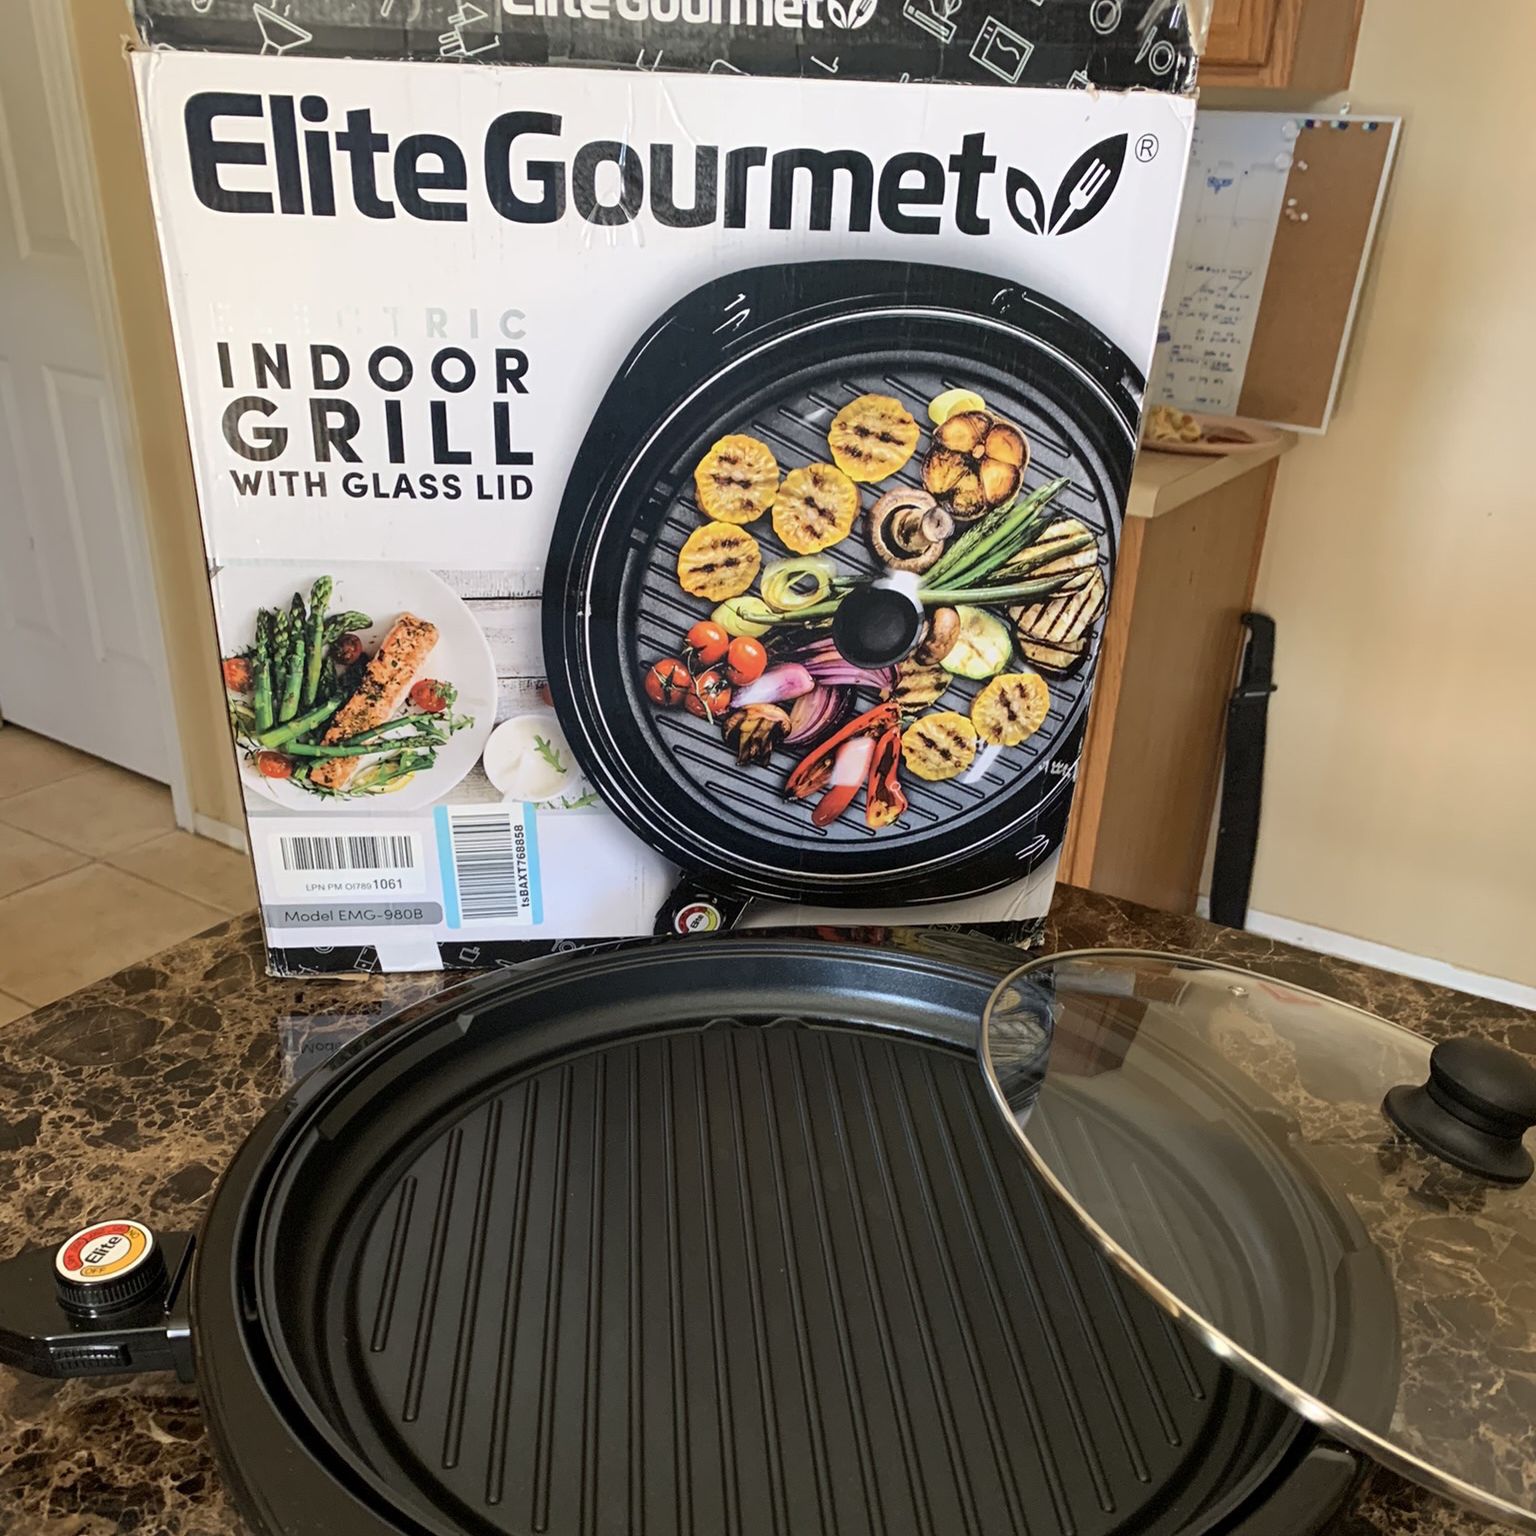 Elite Gourmet 14-in. Indoor Electric Grill